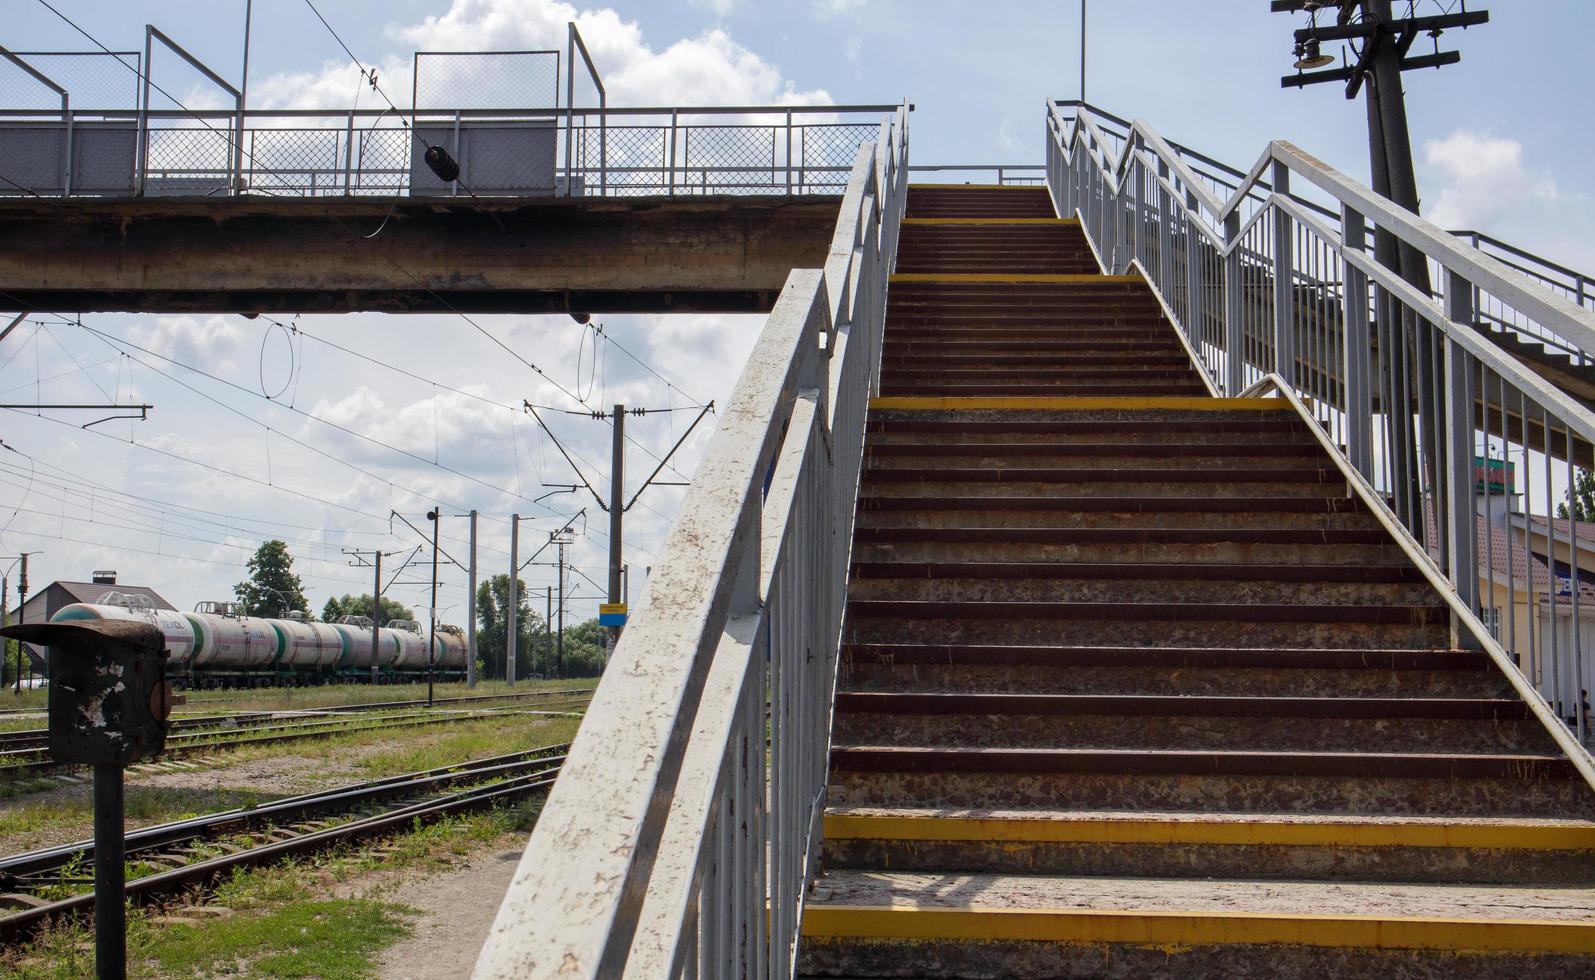 ponte ferroviario a gradini, con imponenti gradini in prospettiva. attraversamento pedonale sopraelevato. scale a ponte che collegano una piattaforma all'altra presso la stazione ferroviaria. ucraina, kiev - 19 agosto 2021. foto